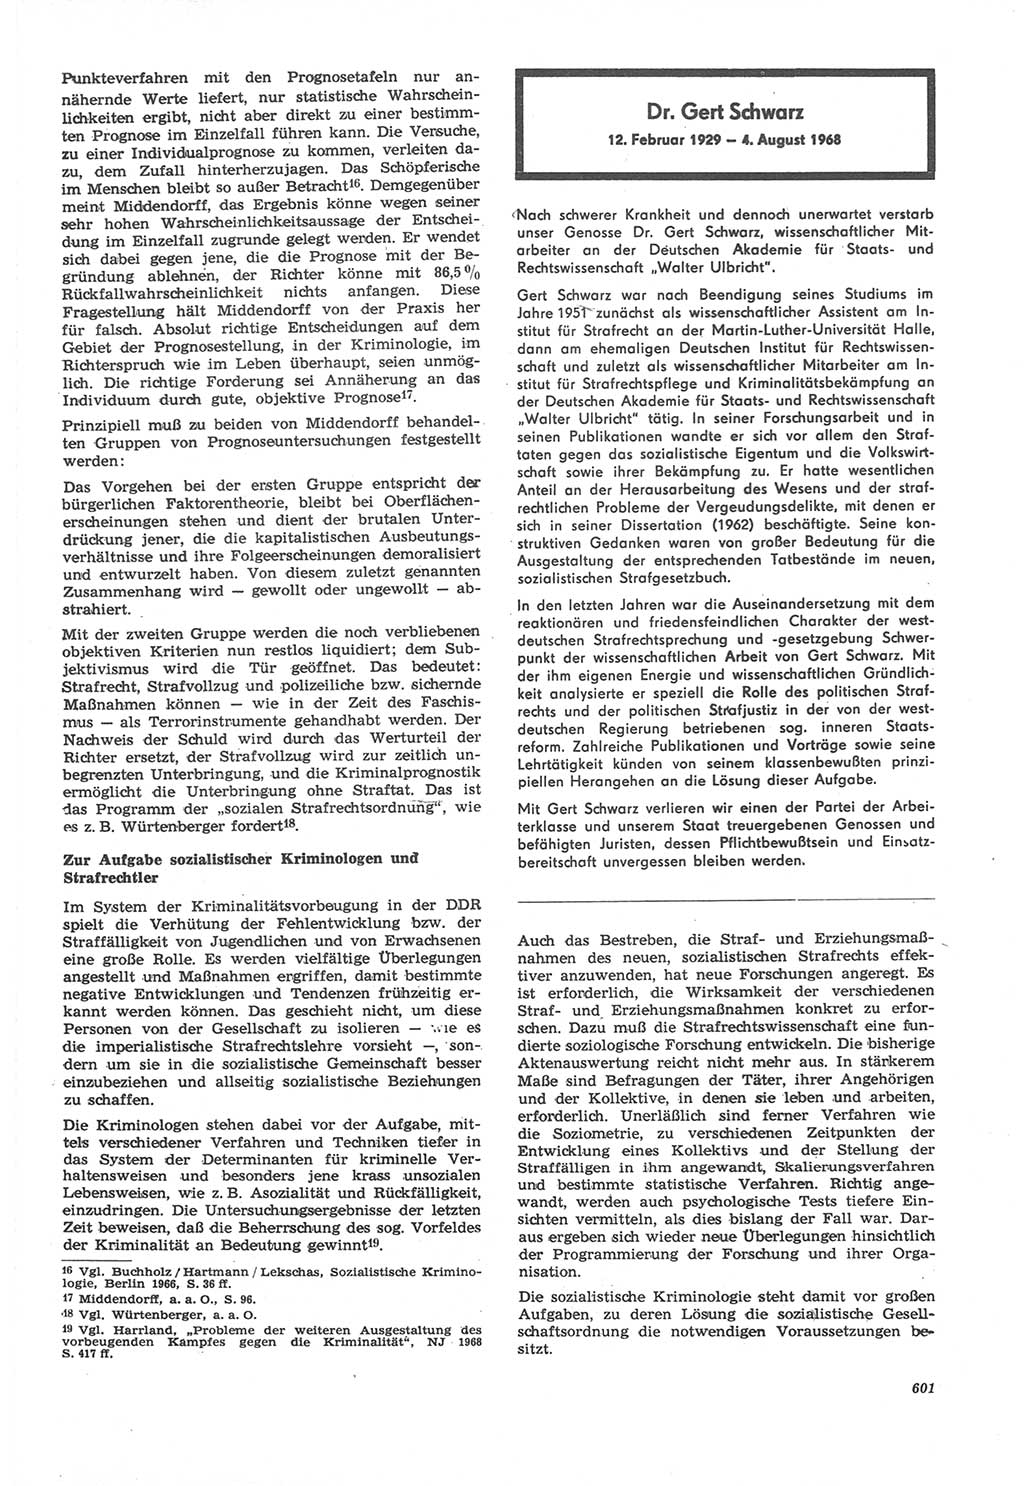 Neue Justiz (NJ), Zeitschrift für Recht und Rechtswissenschaft [Deutsche Demokratische Republik (DDR)], 22. Jahrgang 1968, Seite 601 (NJ DDR 1968, S. 601)